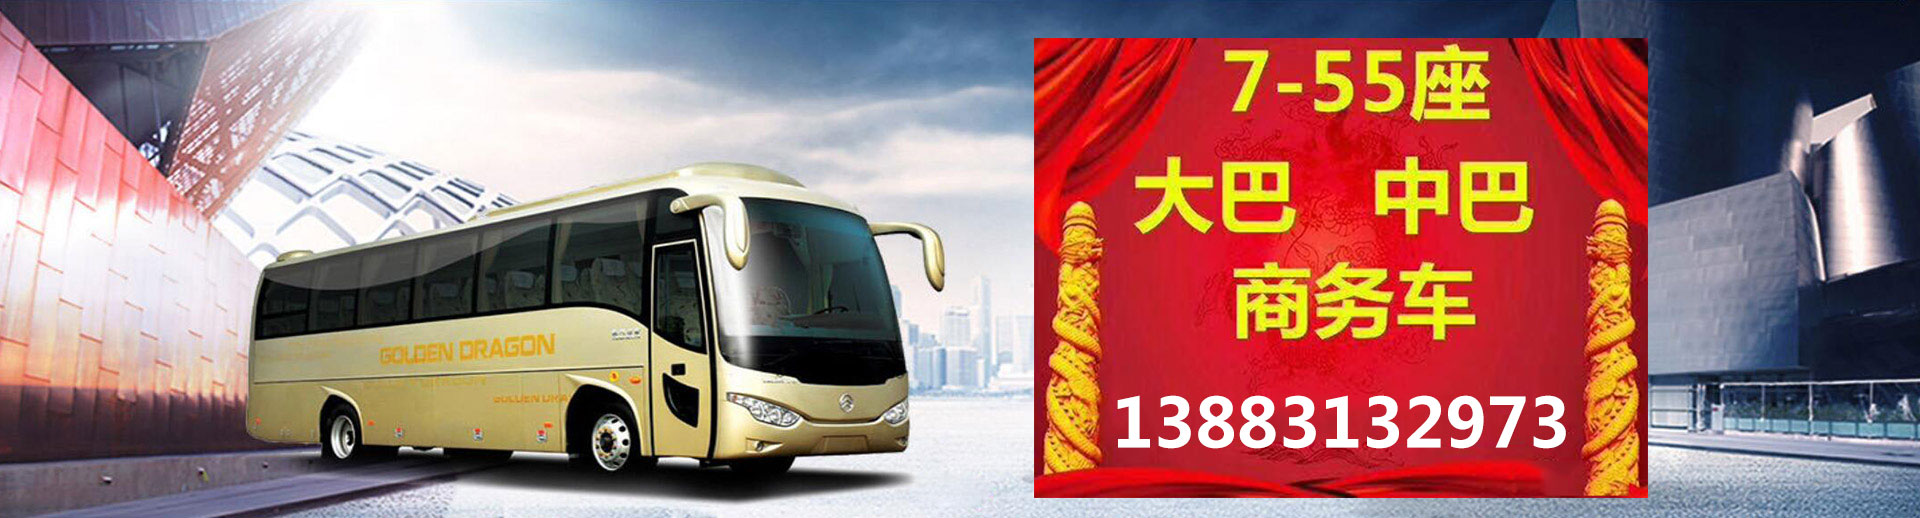 重慶郊旅汽車運輸有限公司